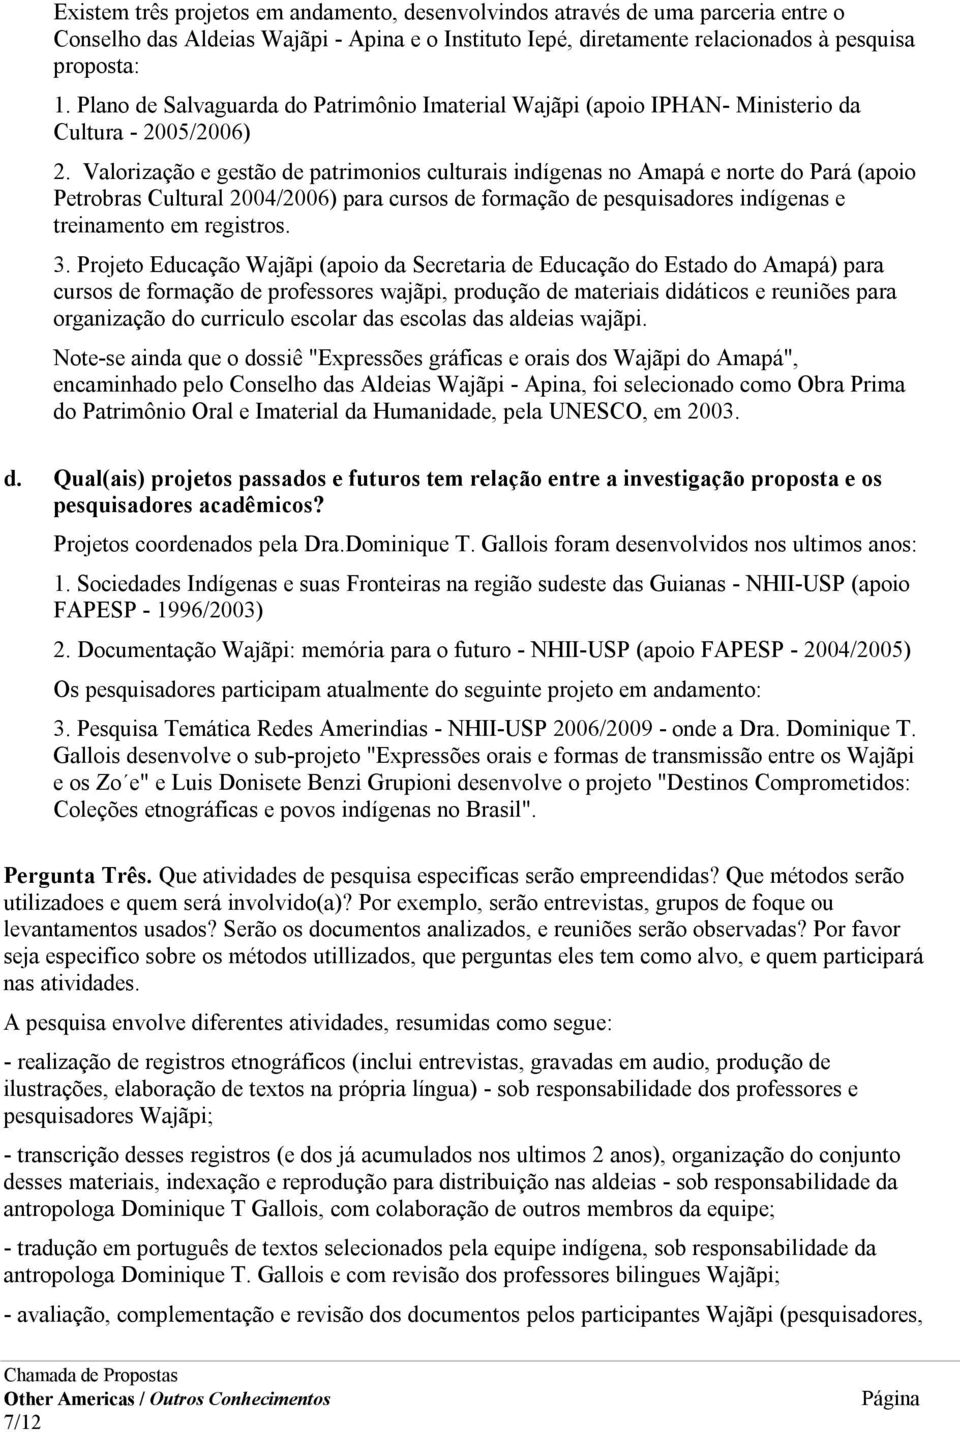 Valorização e gestão de patrimonios culturais indígenas no Amapá e norte do Pará (apoio Petrobras Cultural 2004/2006) para cursos de formação de pesquisadores indígenas e treinamento em registros. 3.